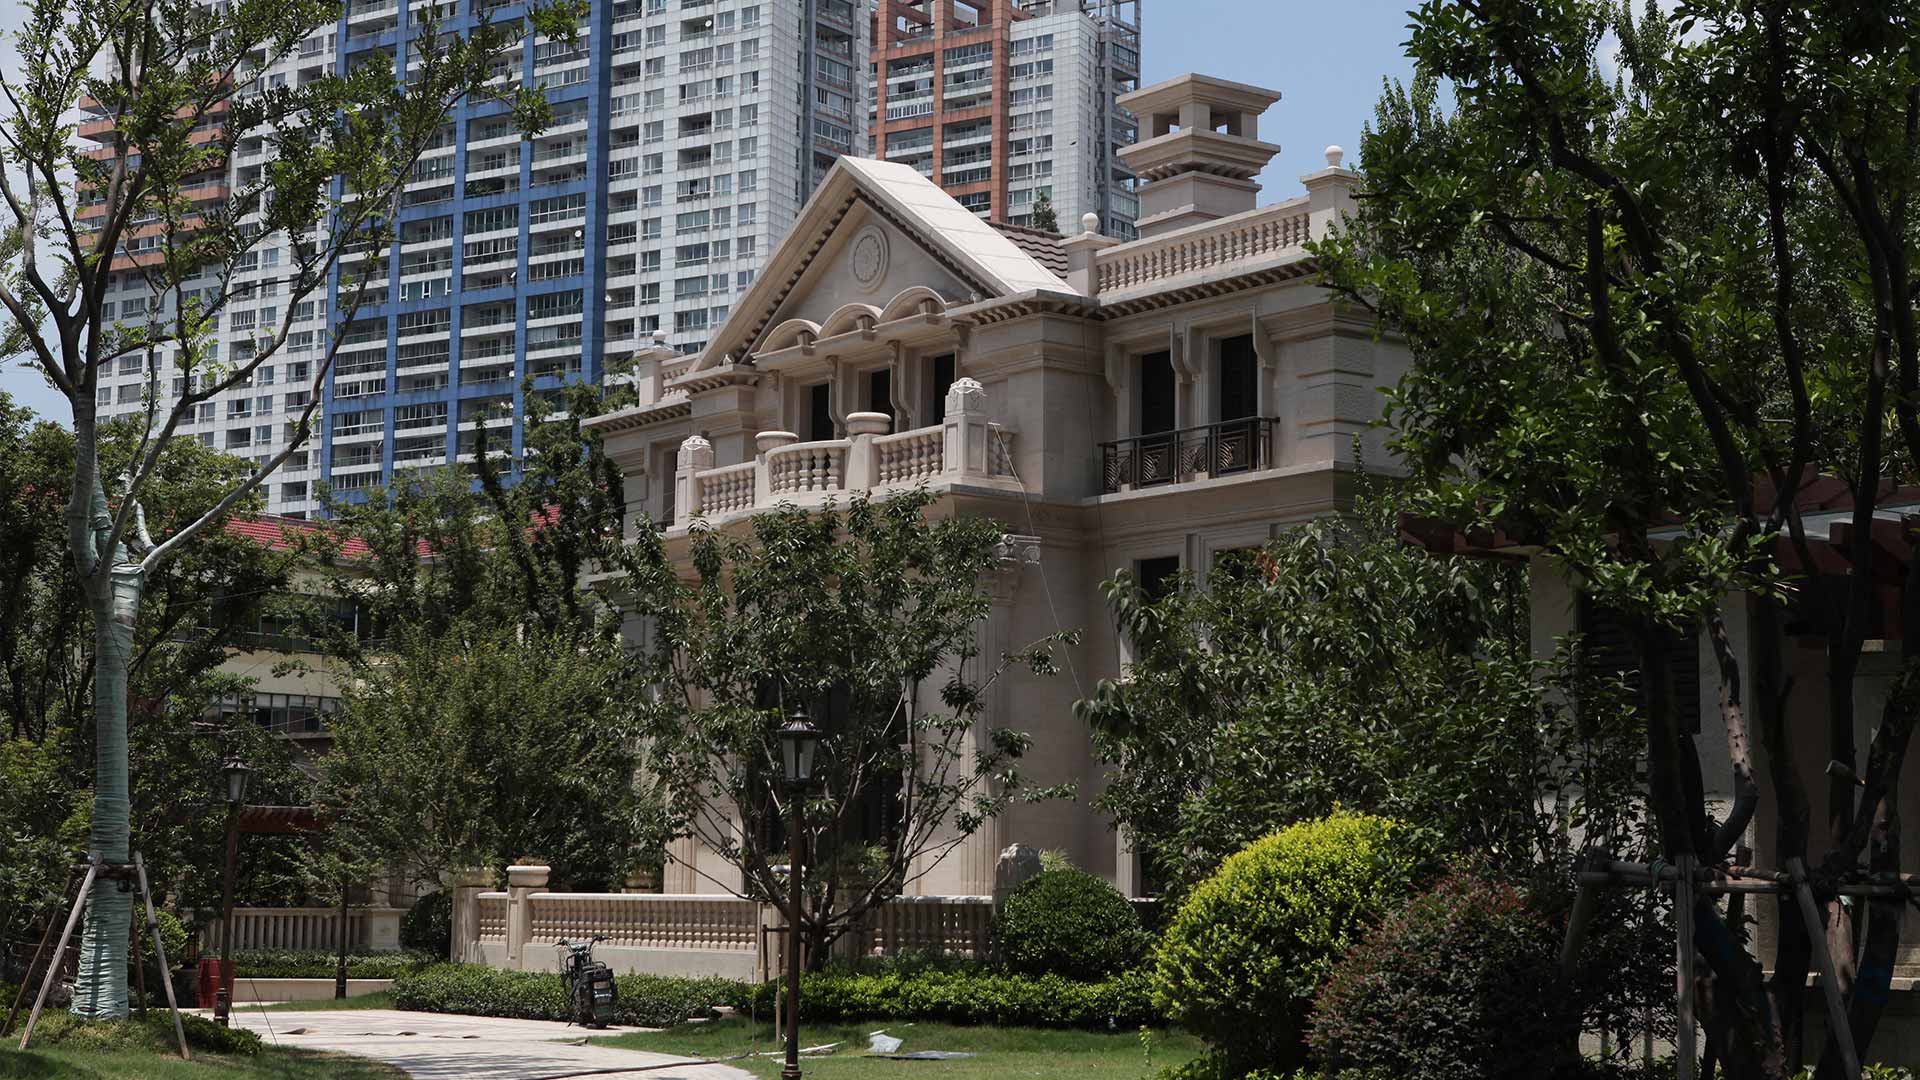 Porta di sicurezza Tekno con cerniere a scomparsa installata su un complesso residenziale “Mansion One Shanghai